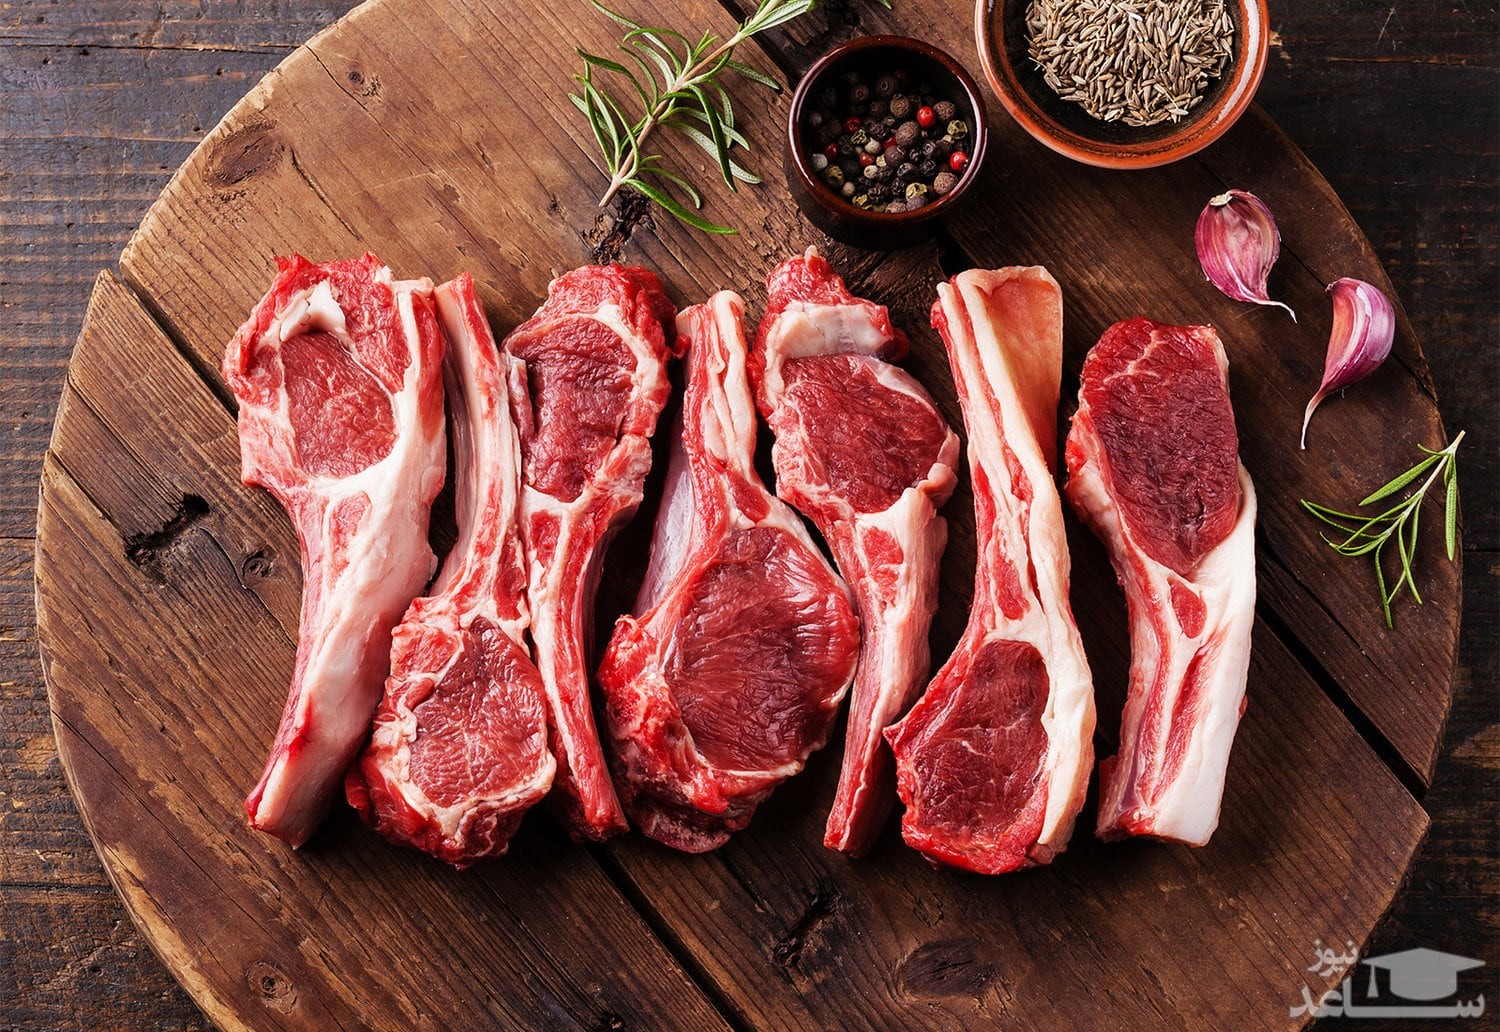 آشنایی با گوشت های قرمز و نحوه تشخیص قسمت های مختلف آن برای آشپزی